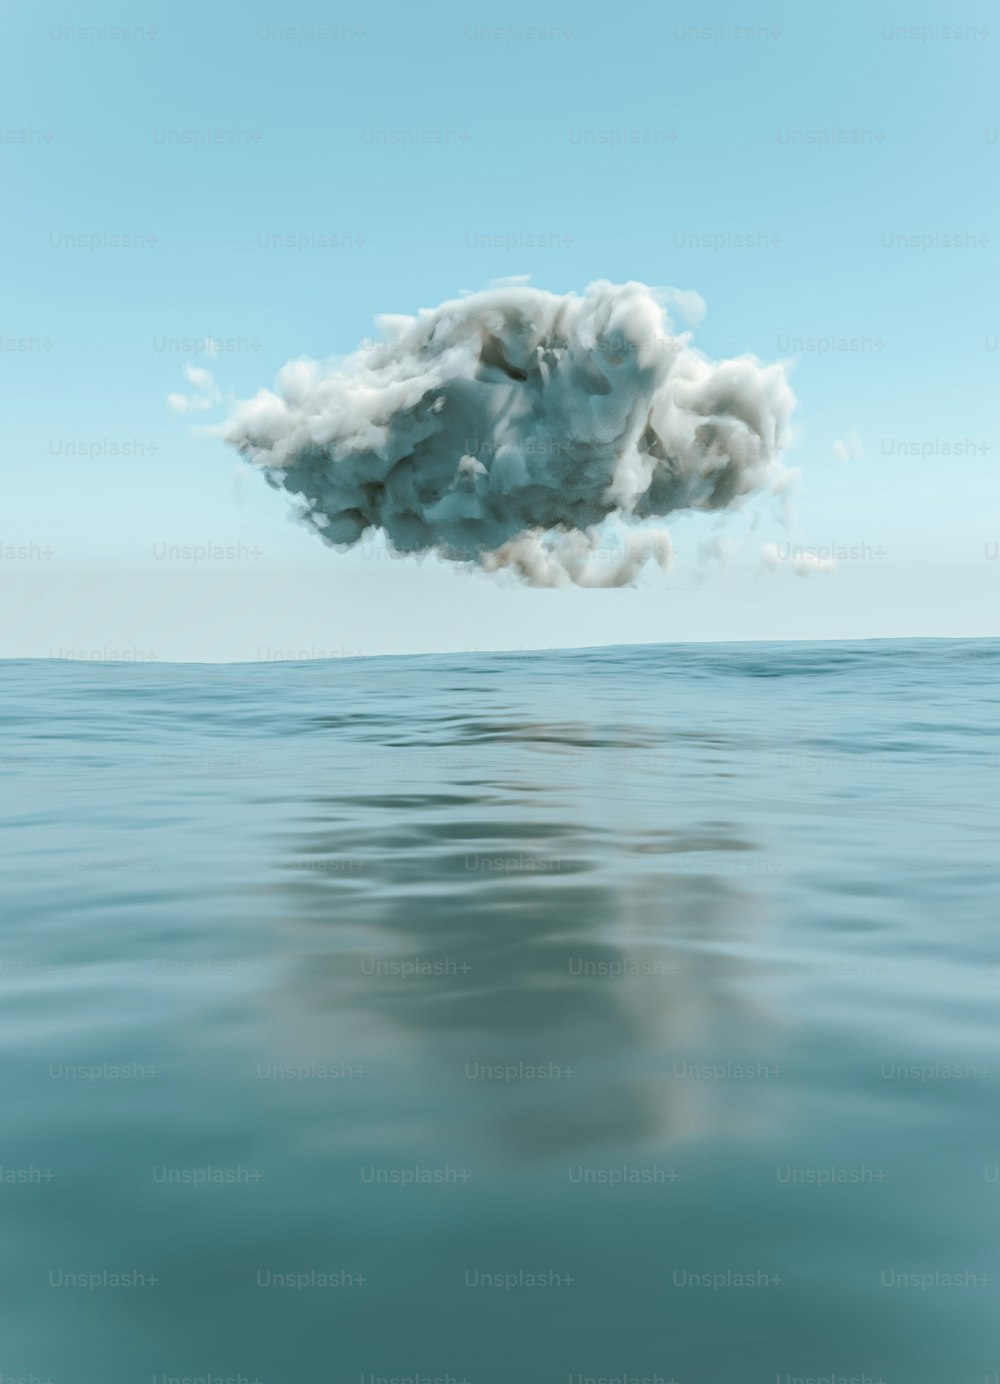 Una nube flotando en el aire sobre un cuerpo de agua